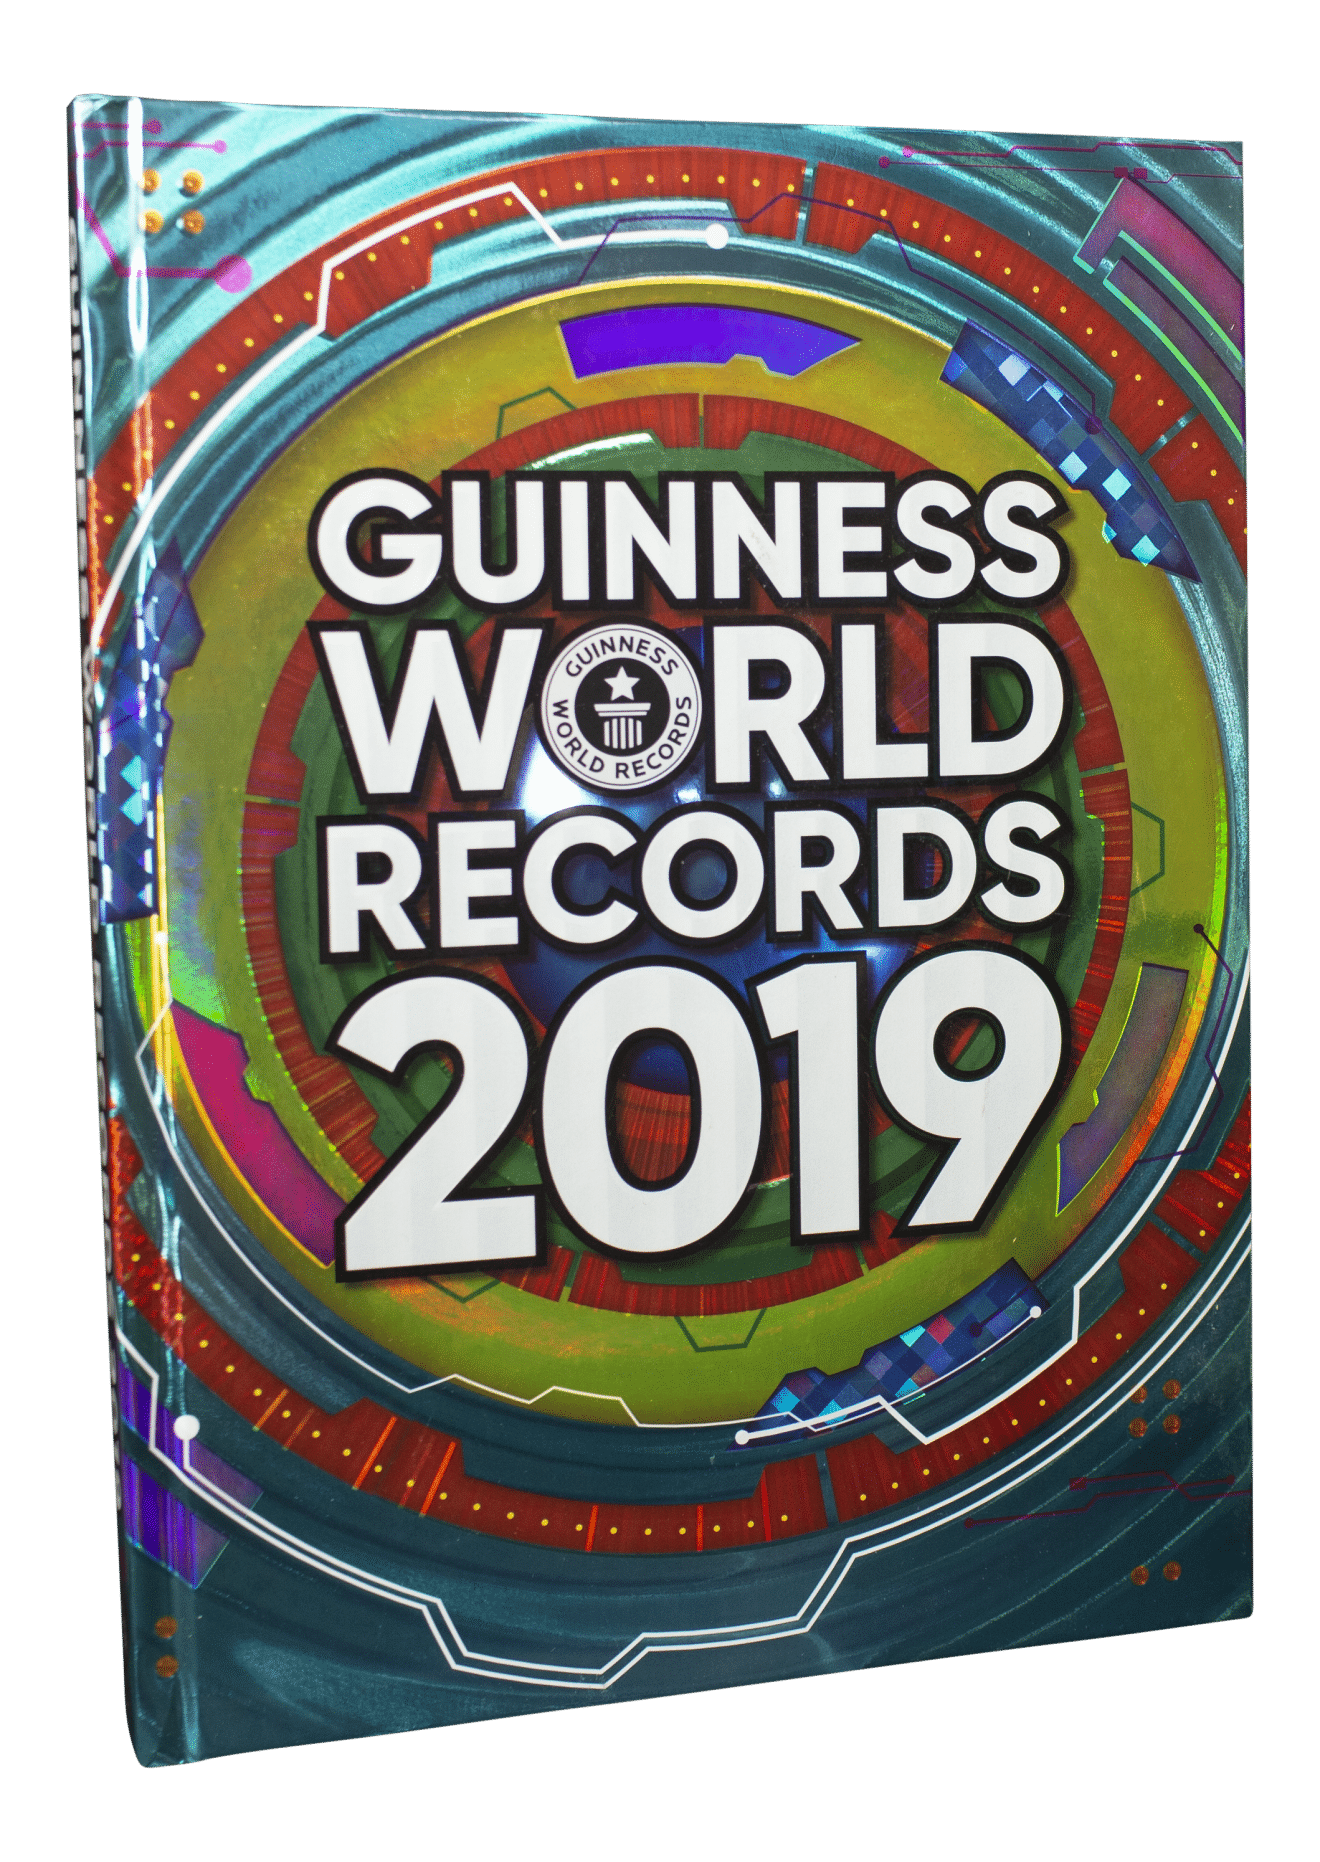 Guinness World Records, Guinness World Records 2019, rekord, rekordbog, rekordbøger, børnebog, børnebøger